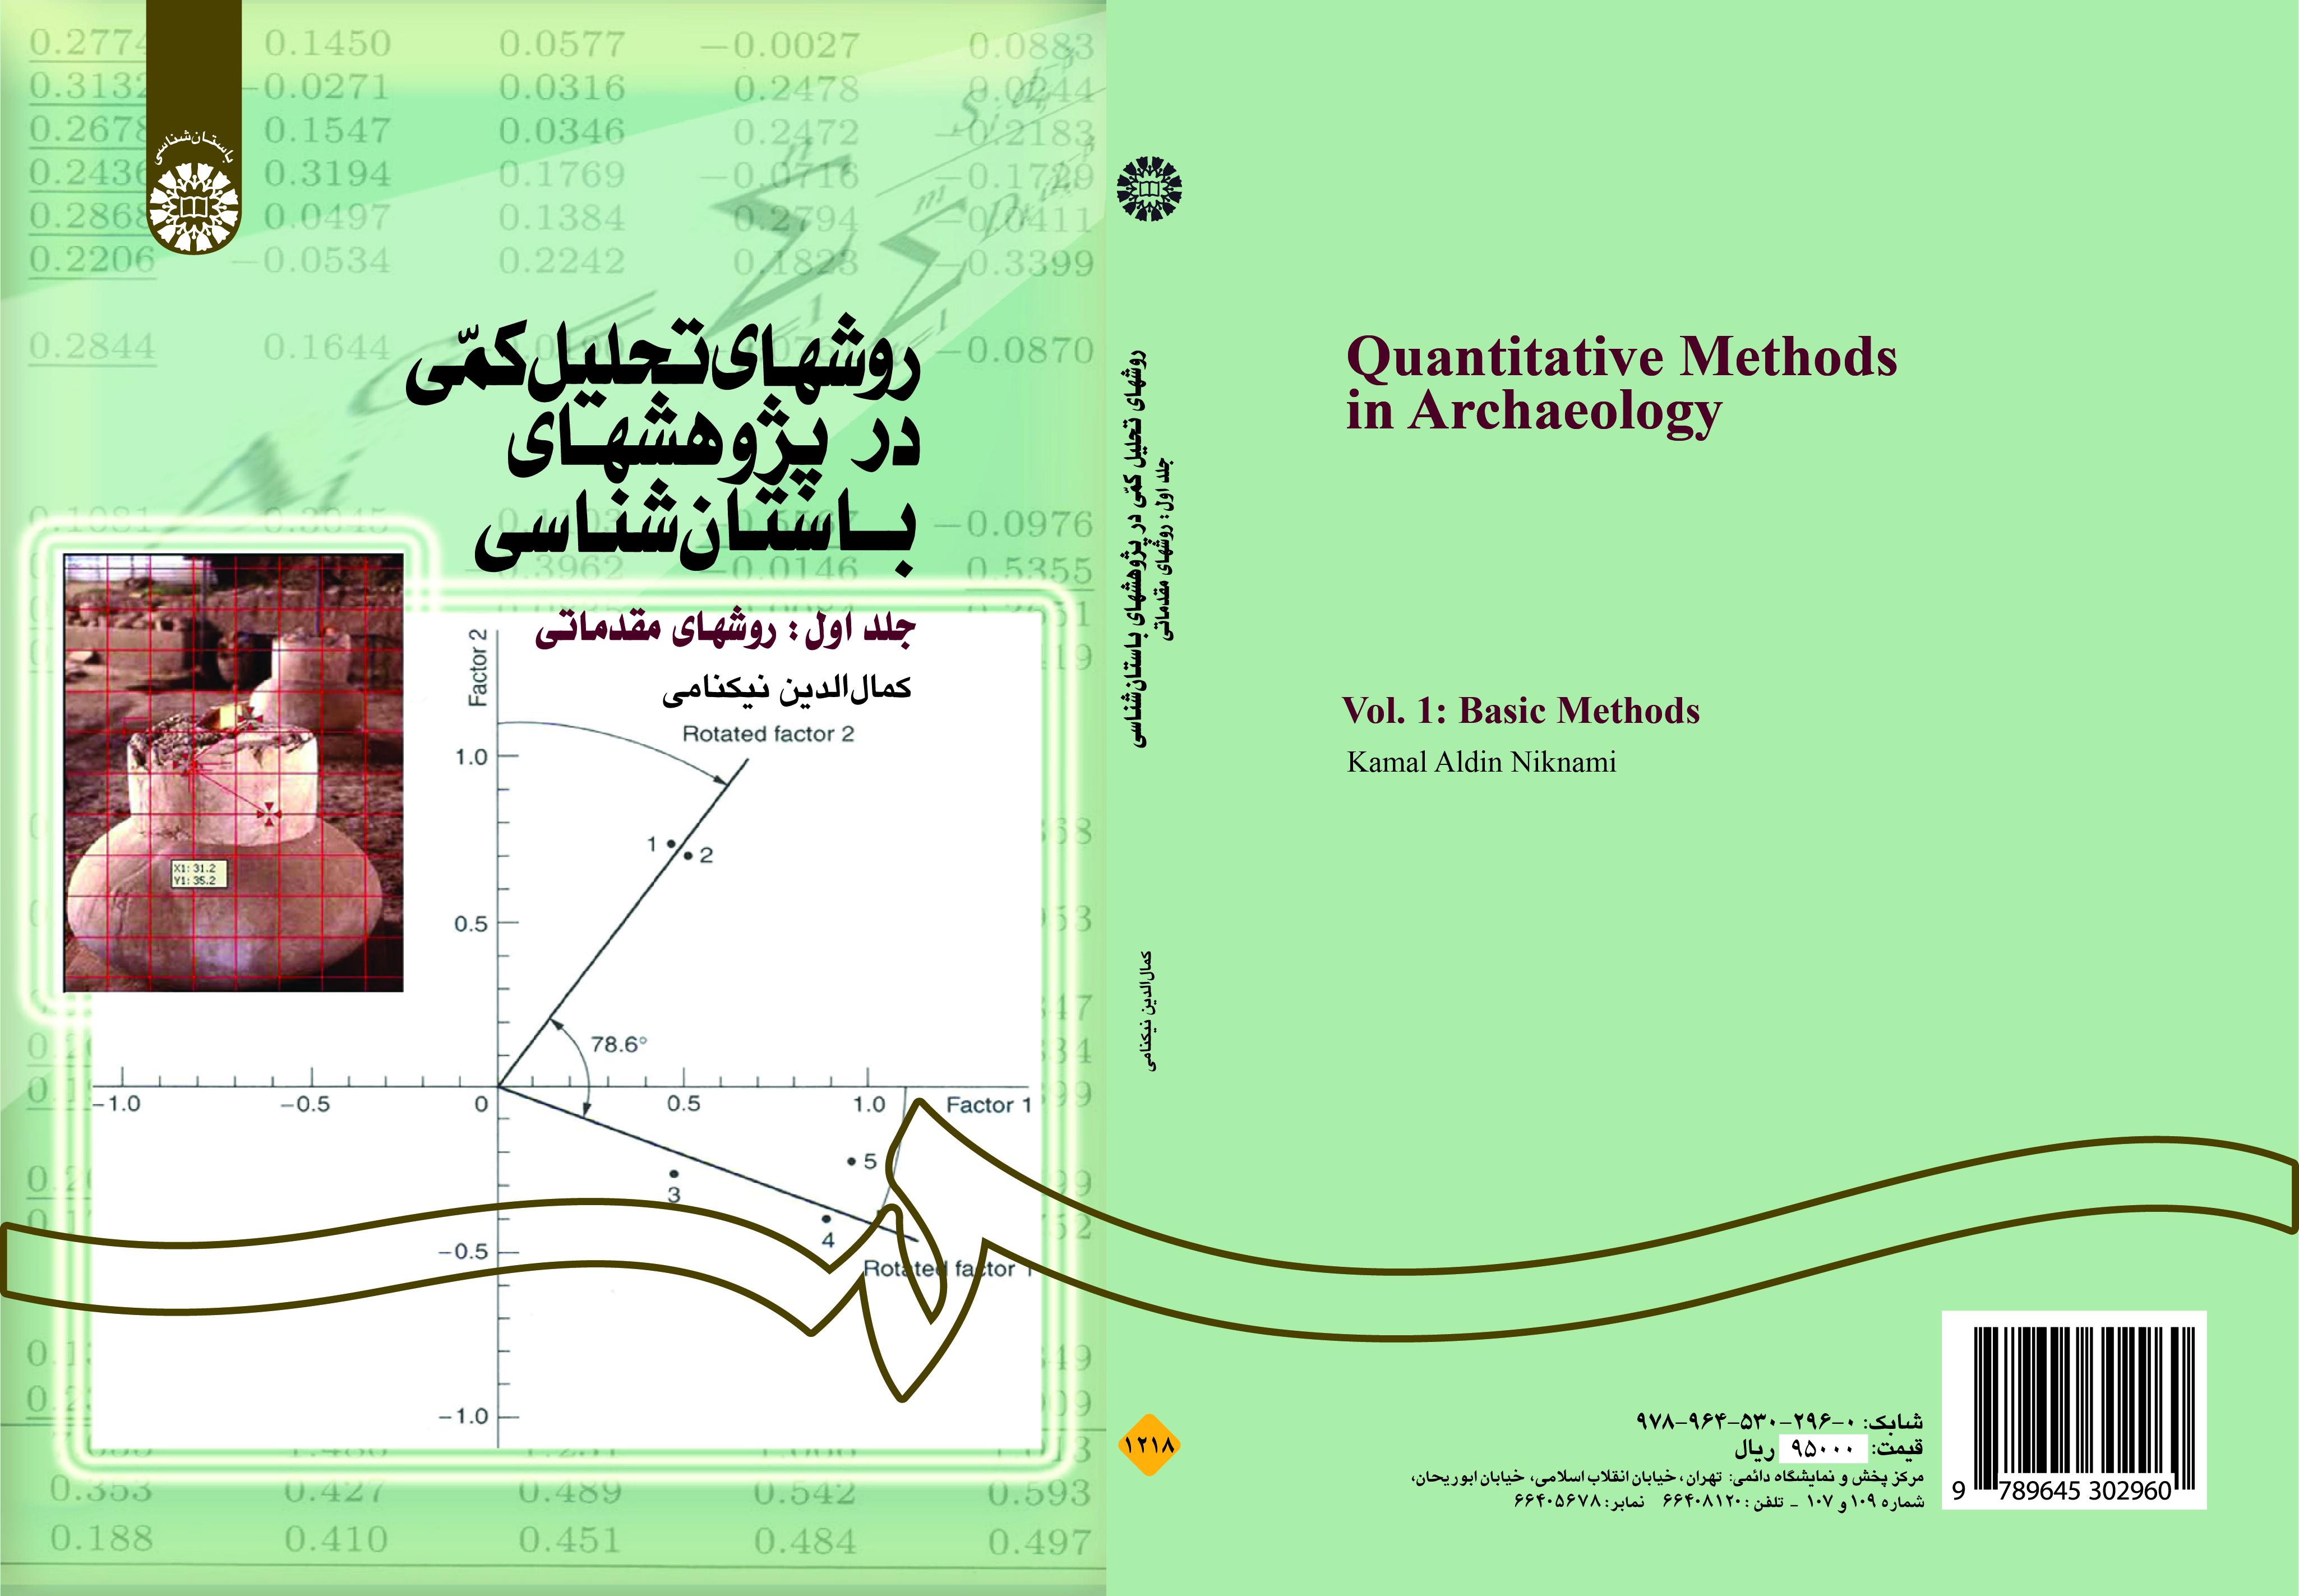 أساليب التحليل الكمي في الدراسات الأثرية (المجلد الأول): الأساليب التمهيدية